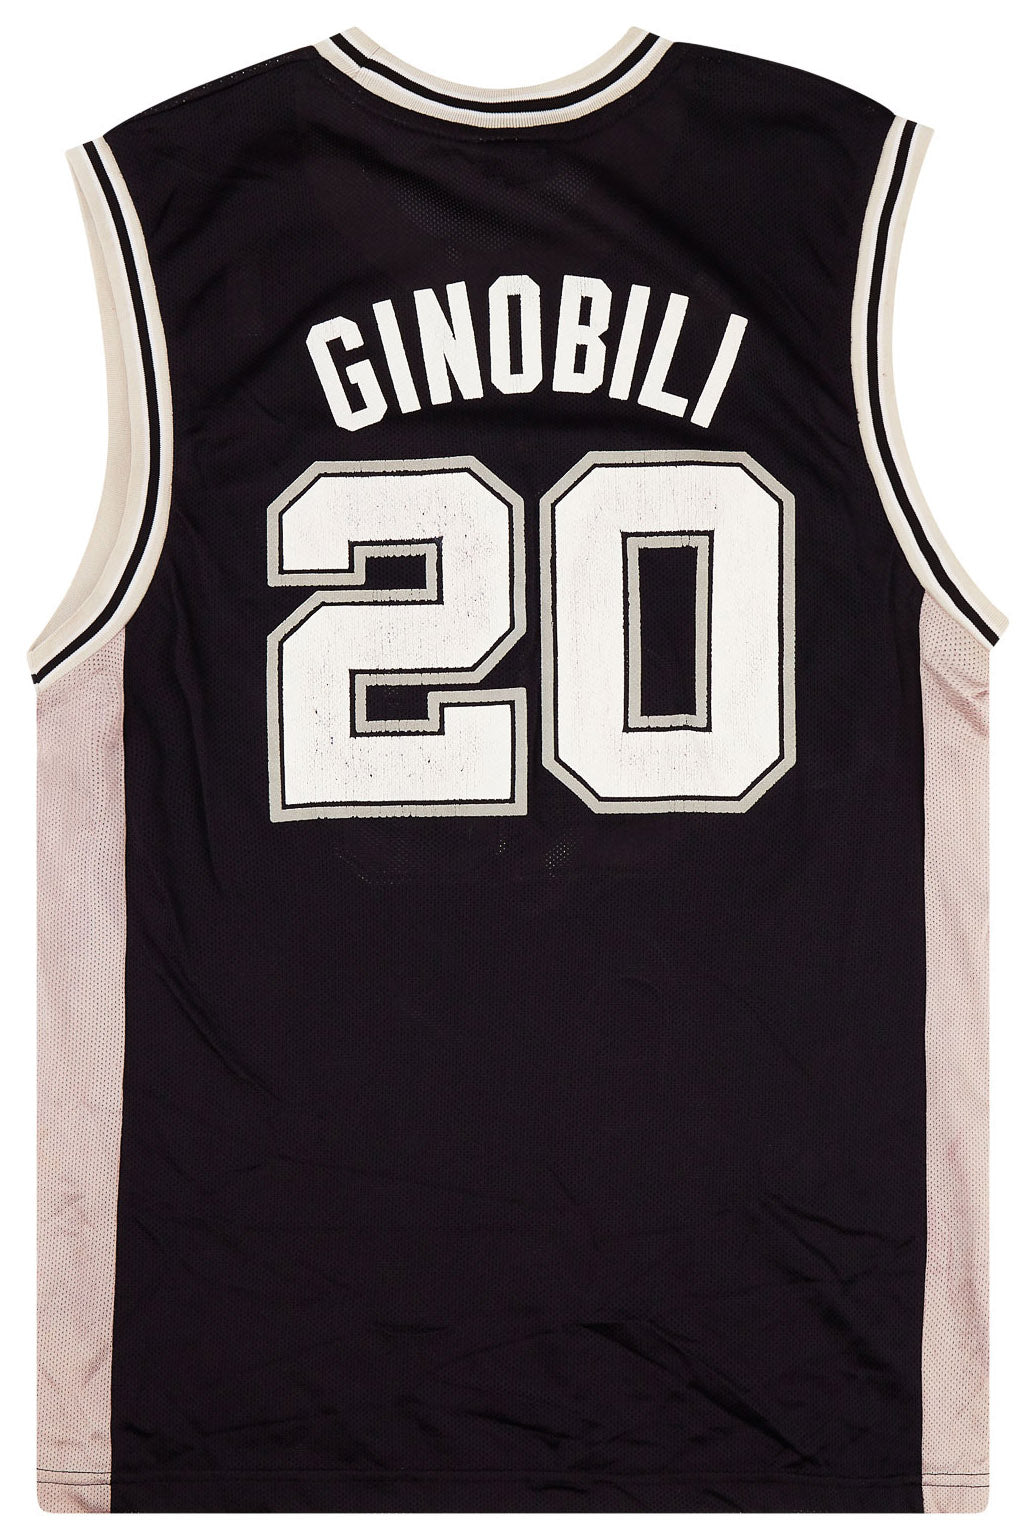 Manu Ginobili San Antonio Spurs Black Jersey